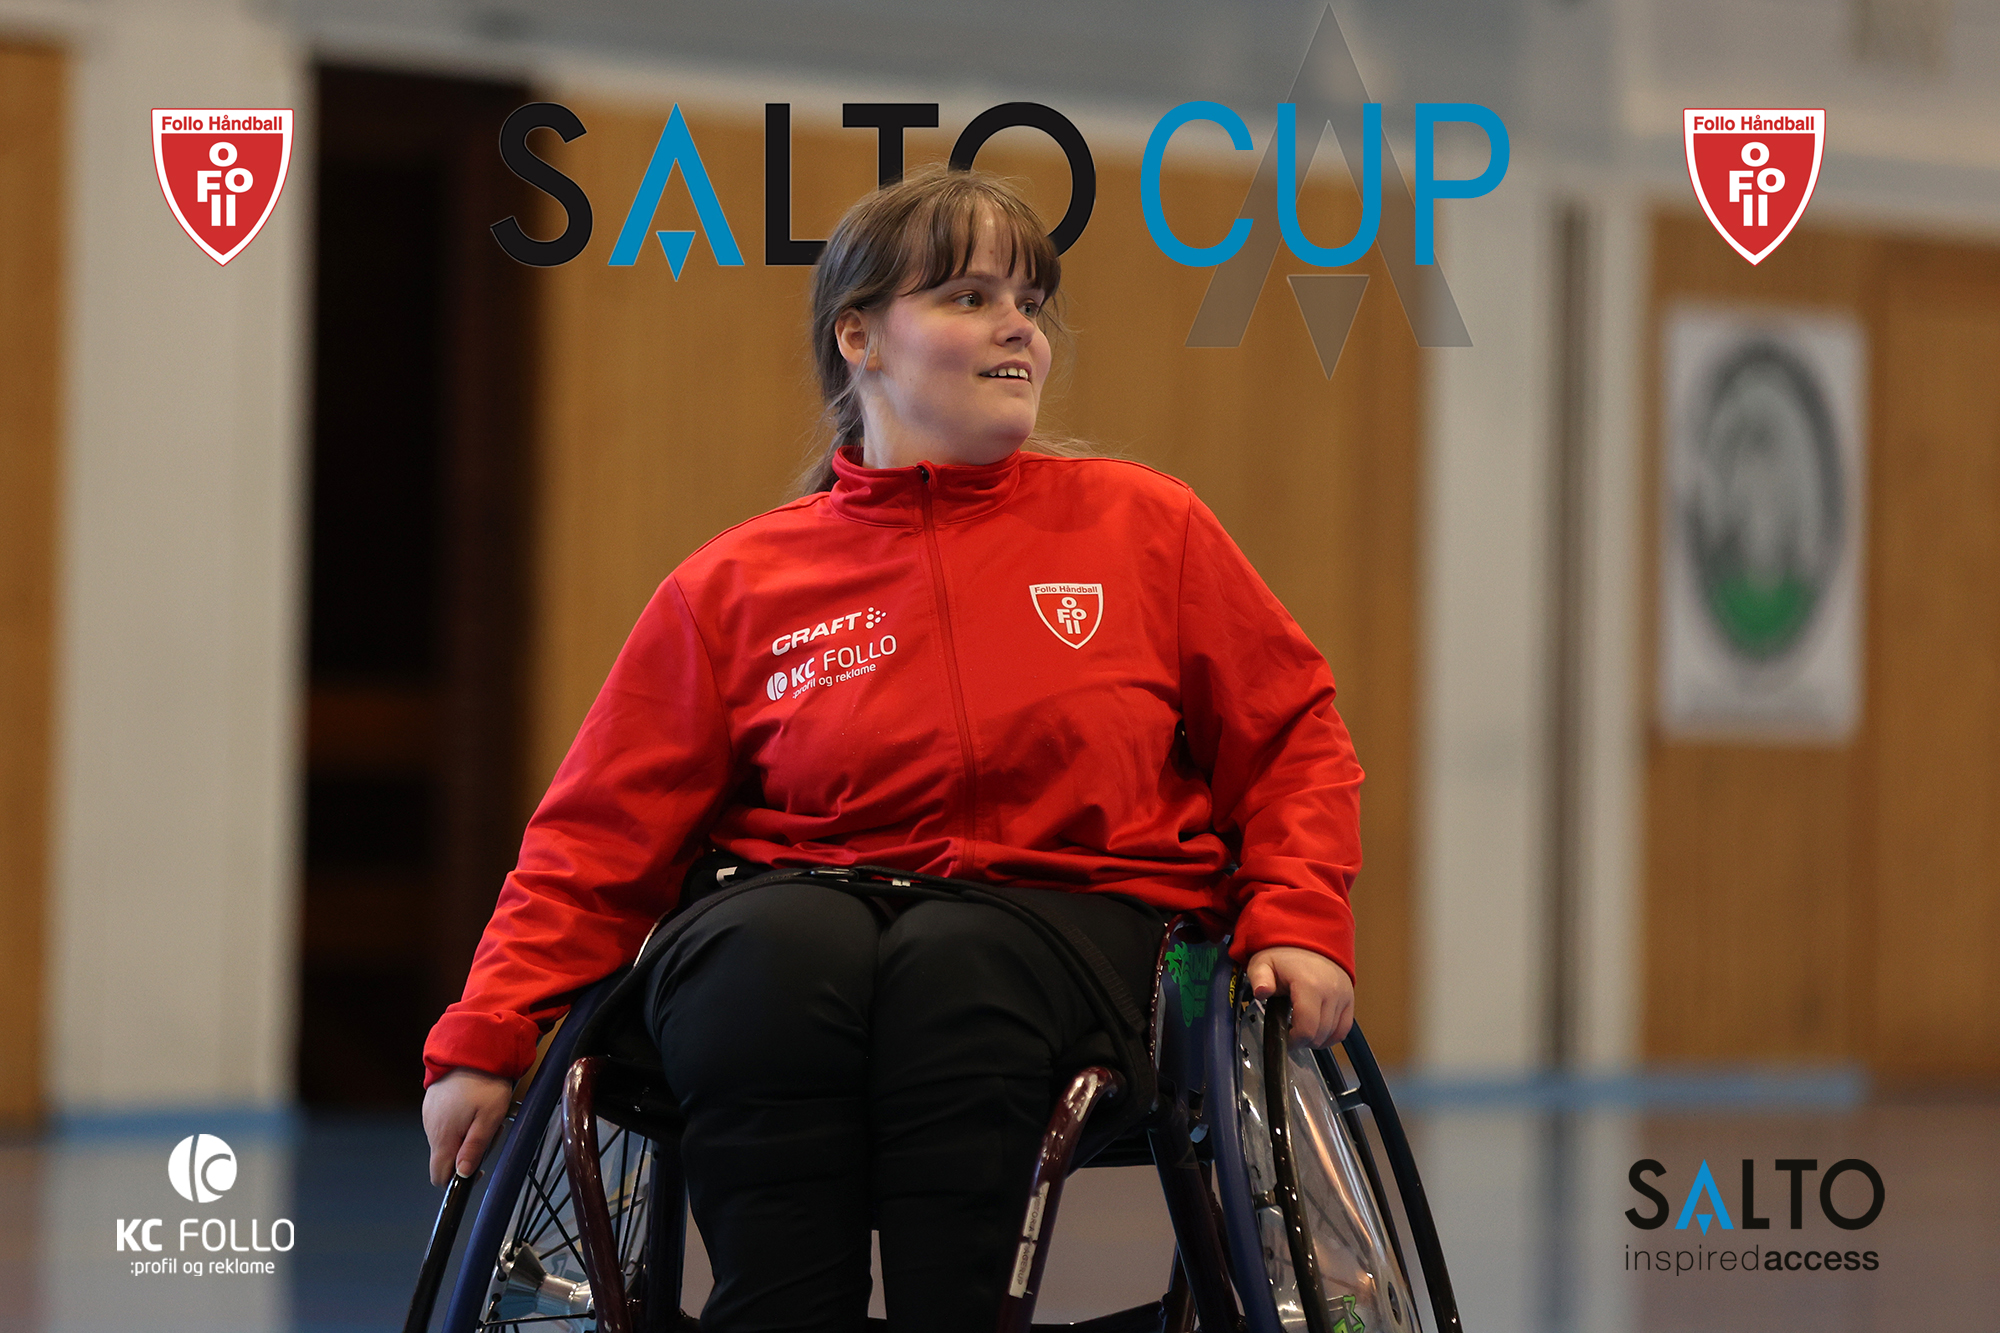 Salto_Cup copy